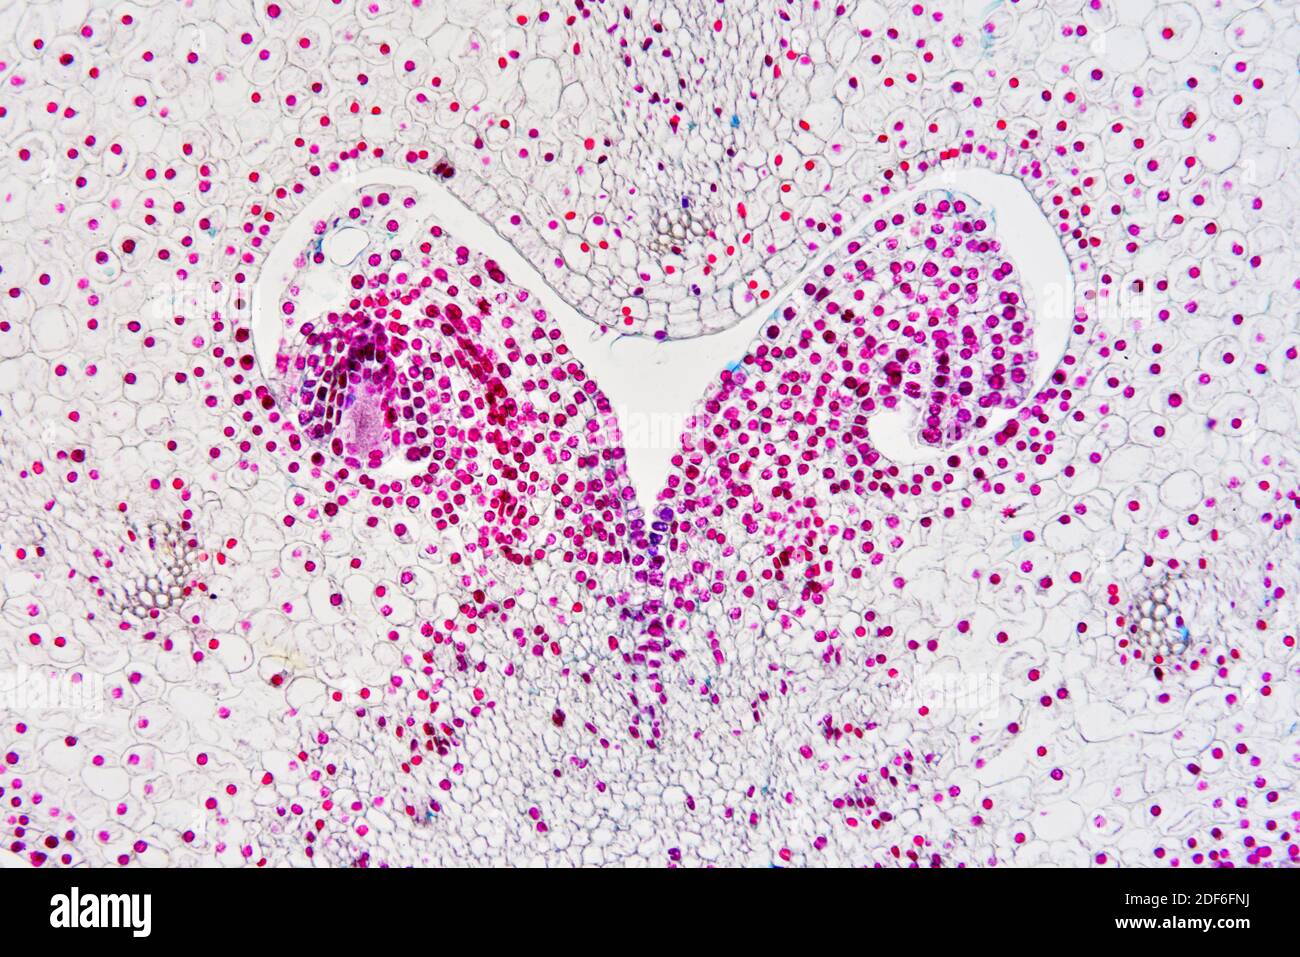 Ovaire de lilium avec ovule. Microscope optique X100. Banque D'Images